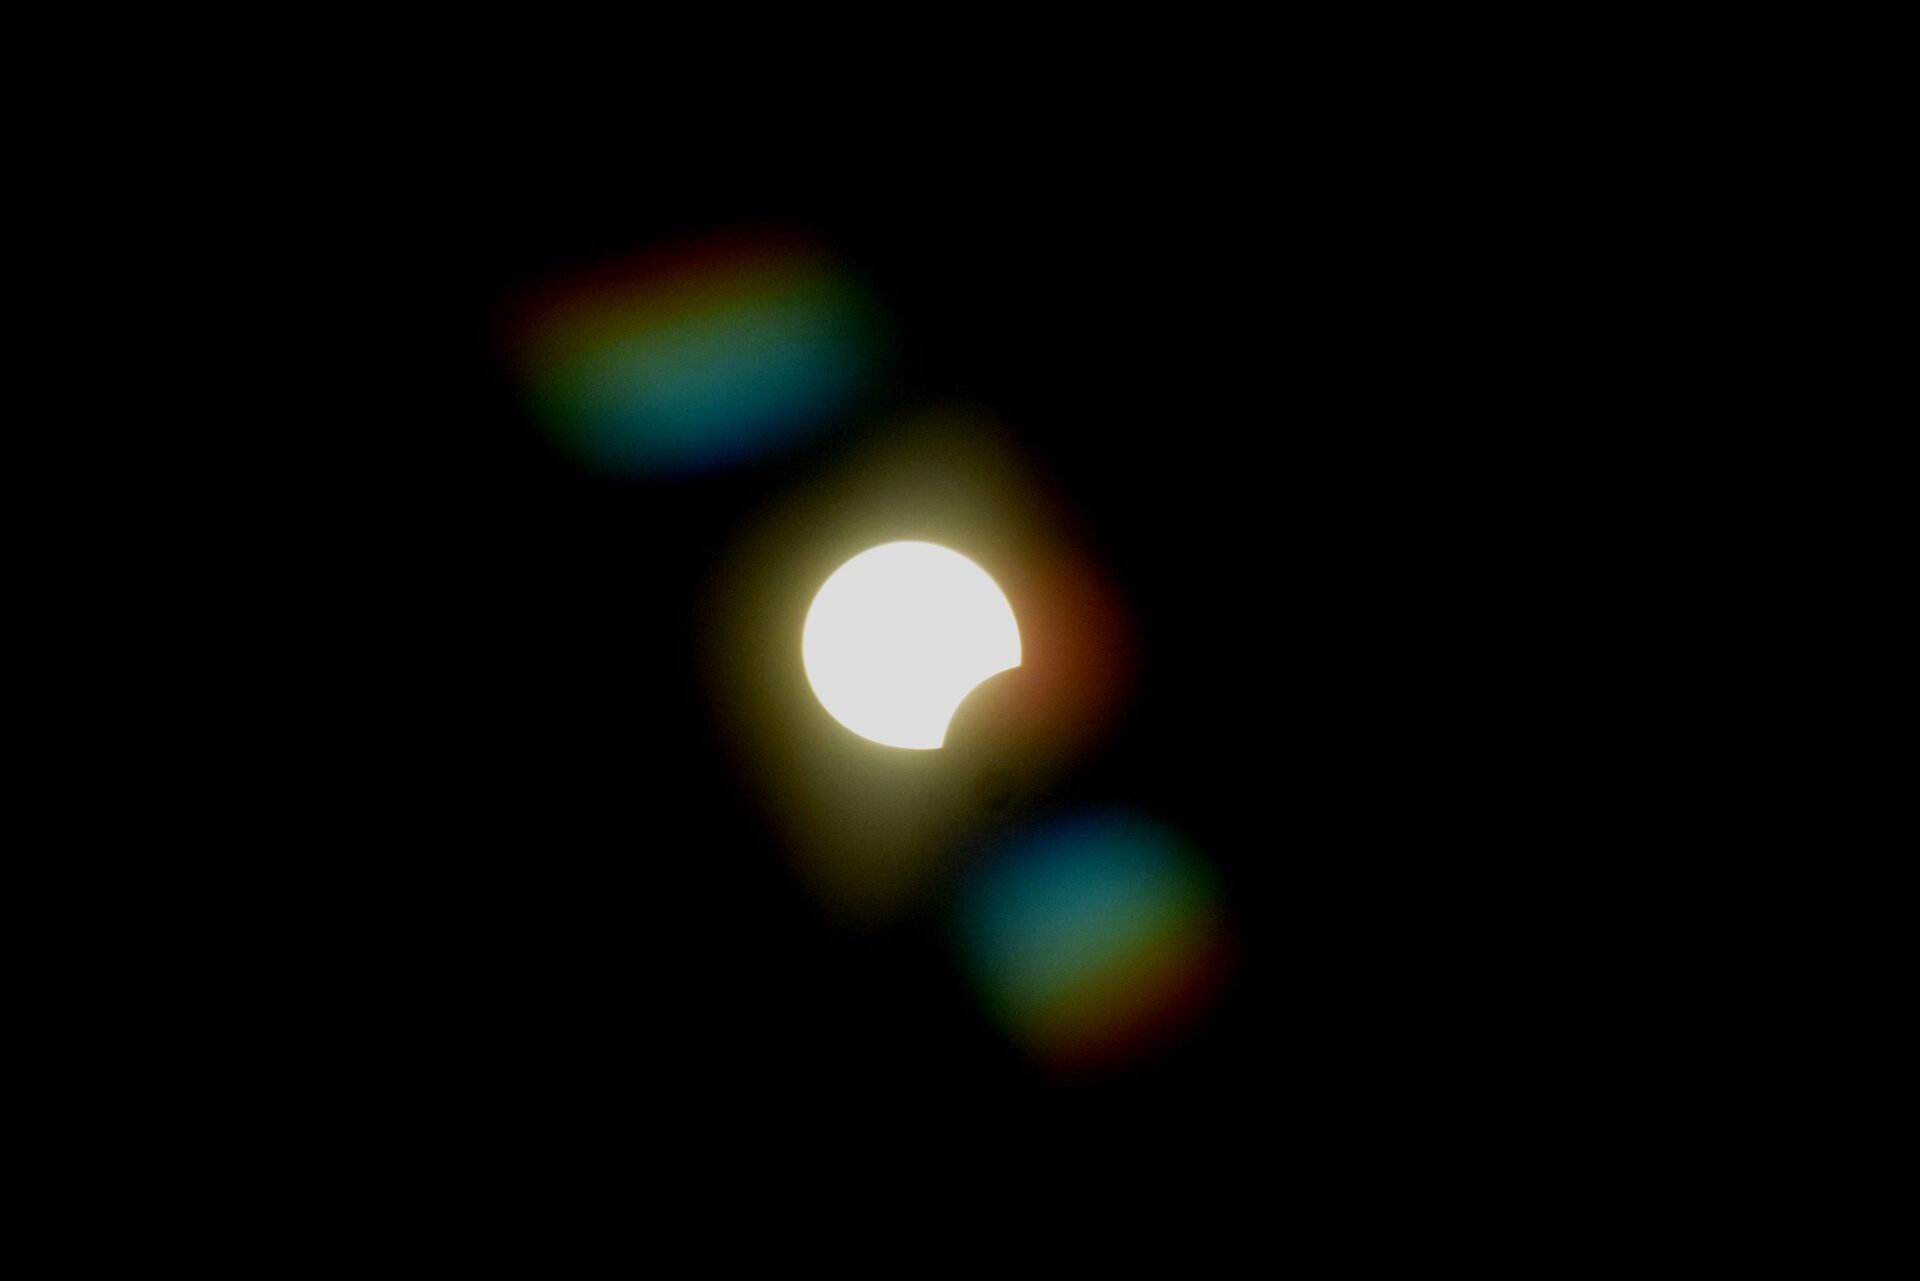 Μερική έκλειψη ηλίου: Το φαινόμενο μέσα από το νέο τηλεσκόπιο του Αστεροσκοπείου του ΑΠΘ [φωτογραφίες] - Περιβάλλον